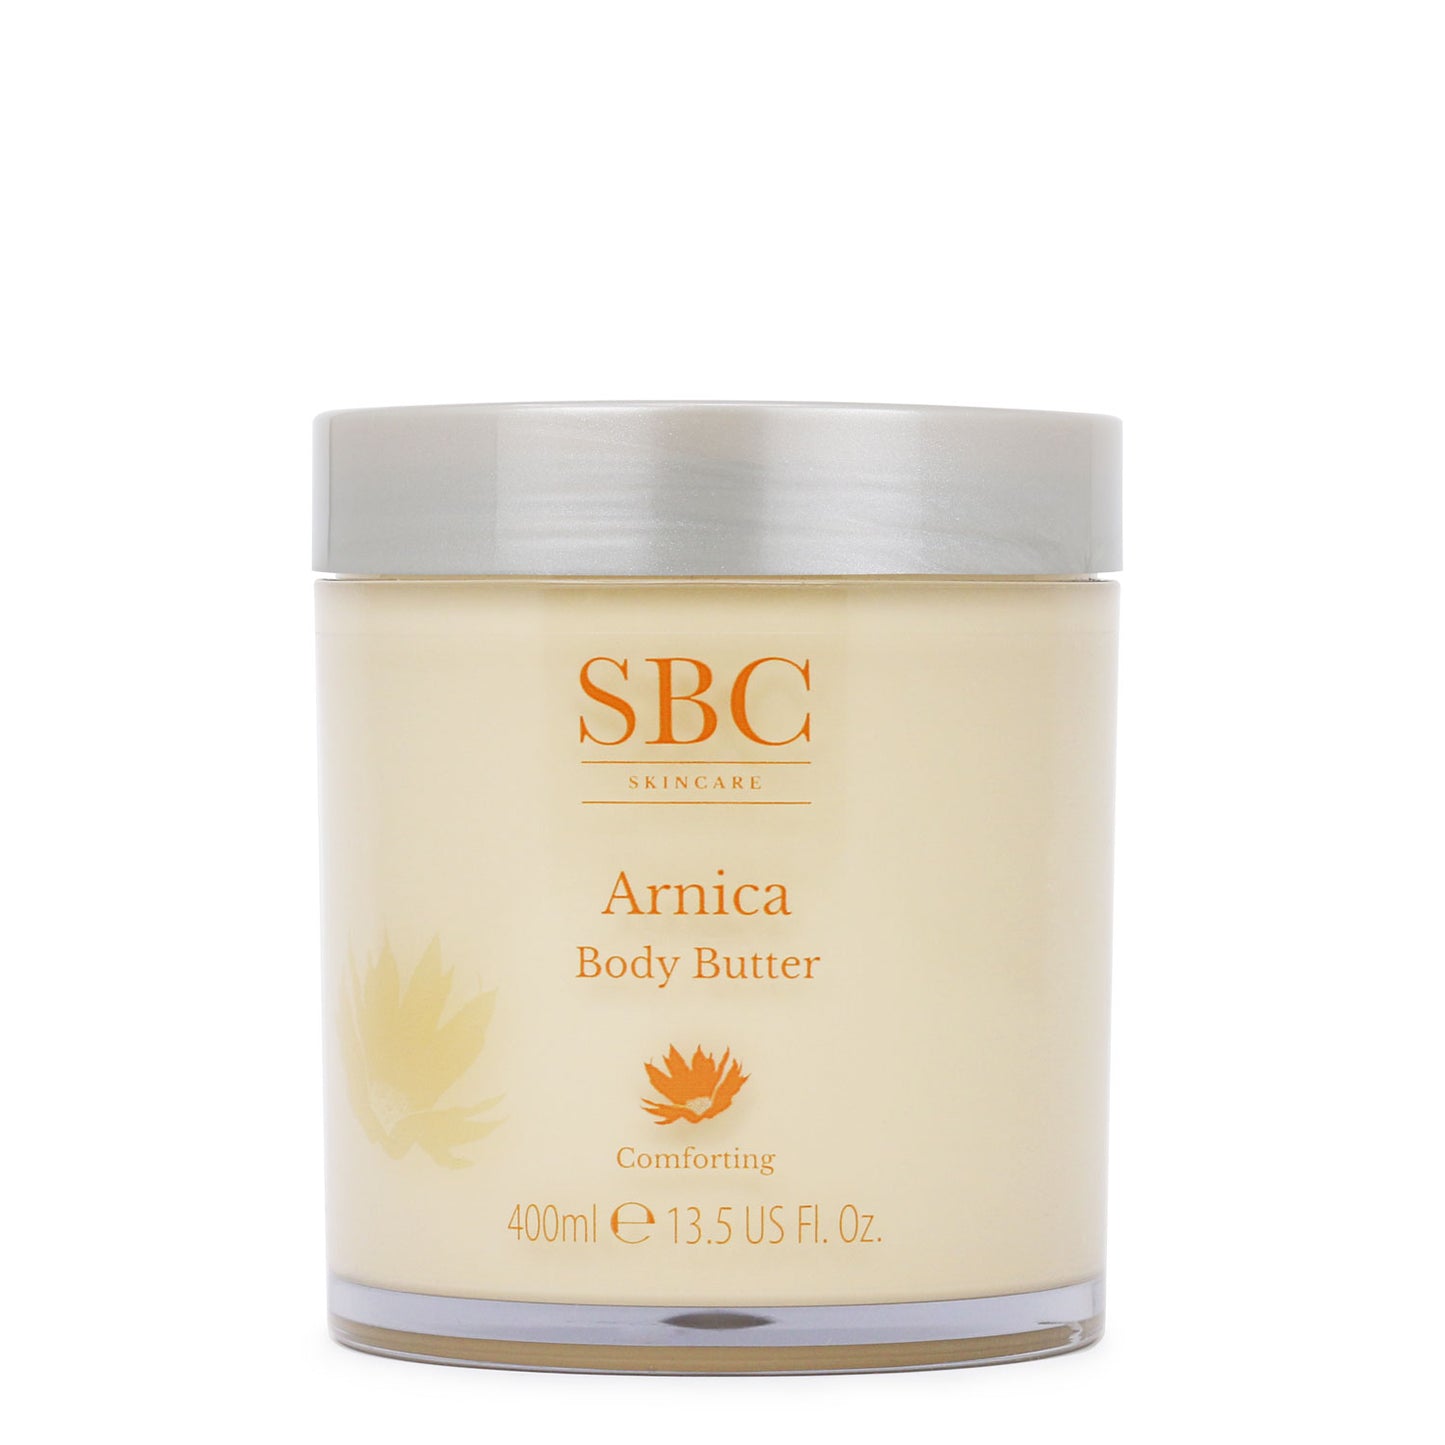 SBC Skincare Arnica Body Butter